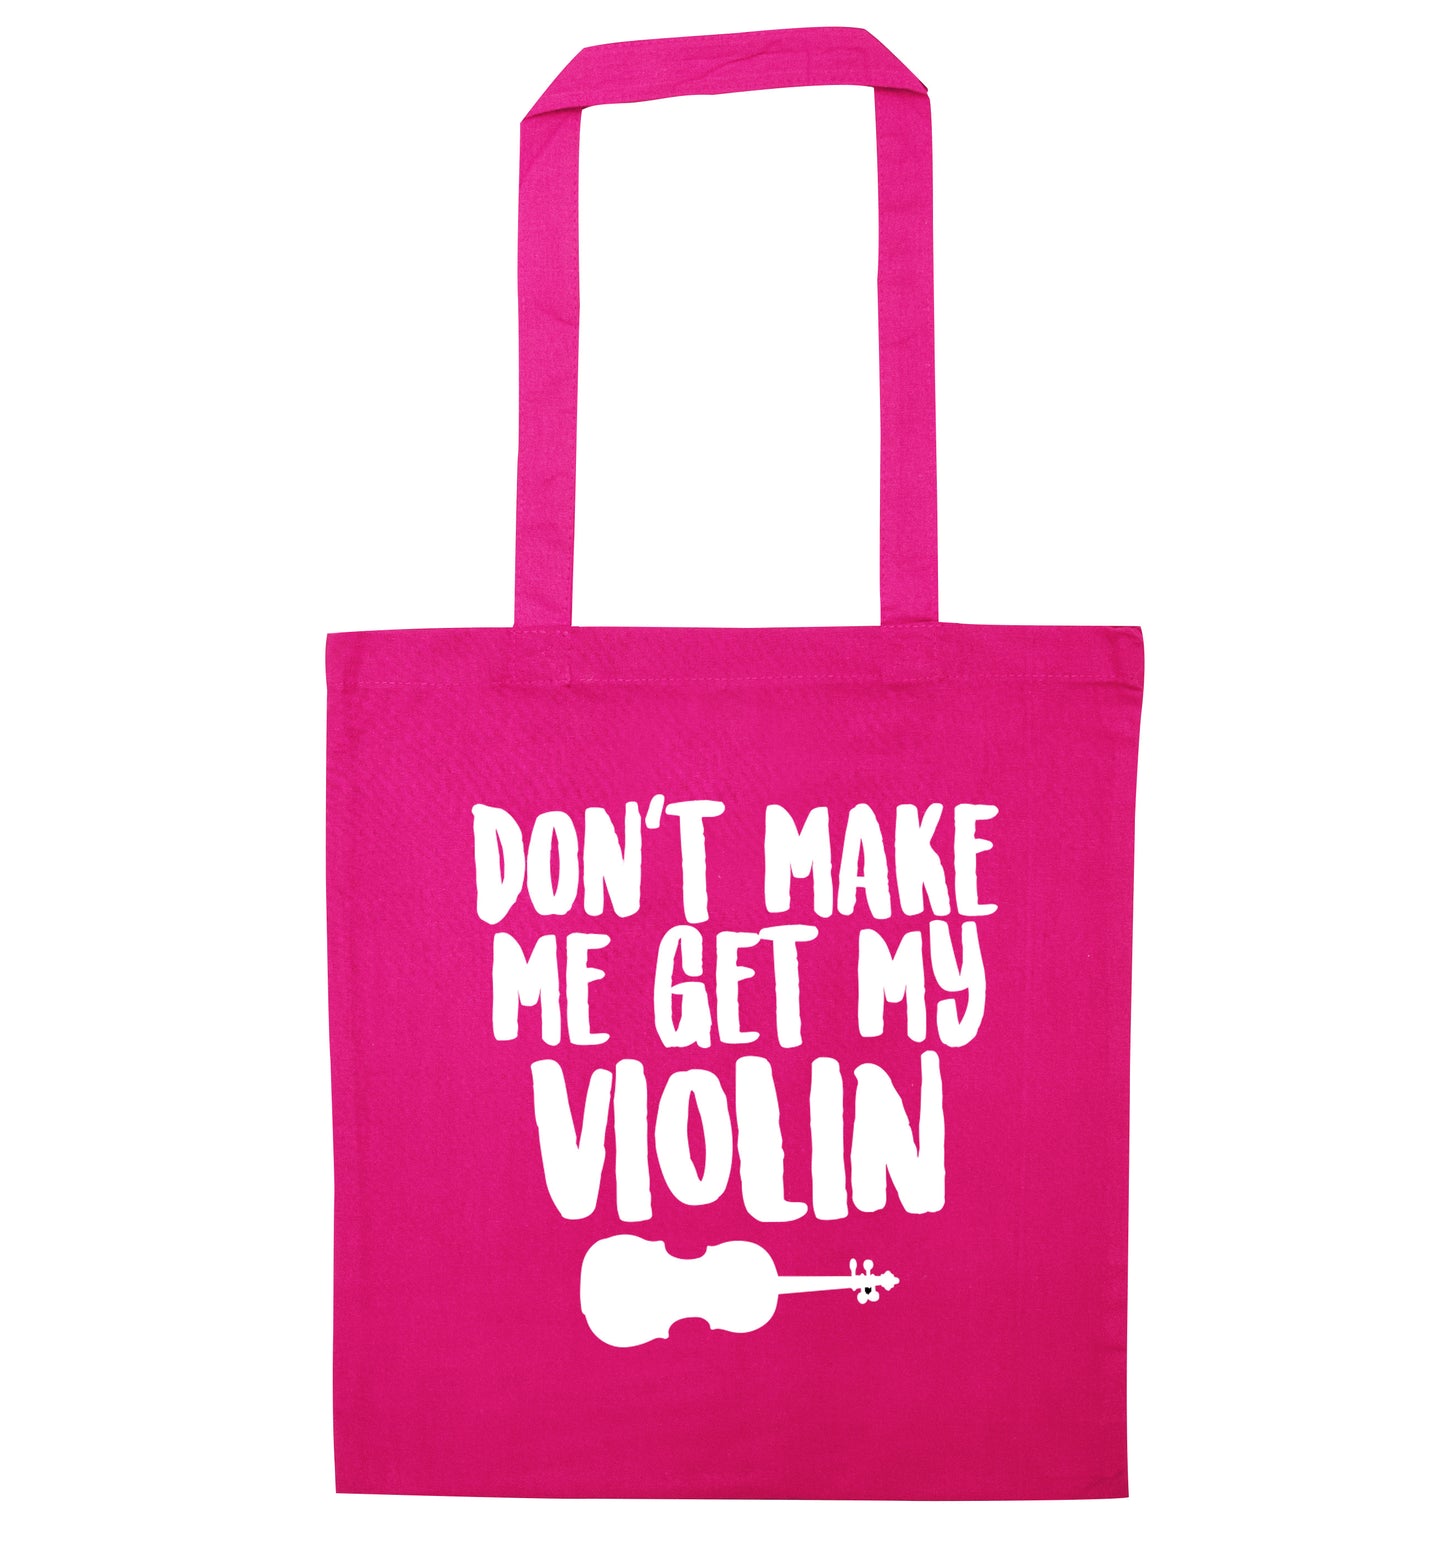 Don't make me get my violin pink tote bag